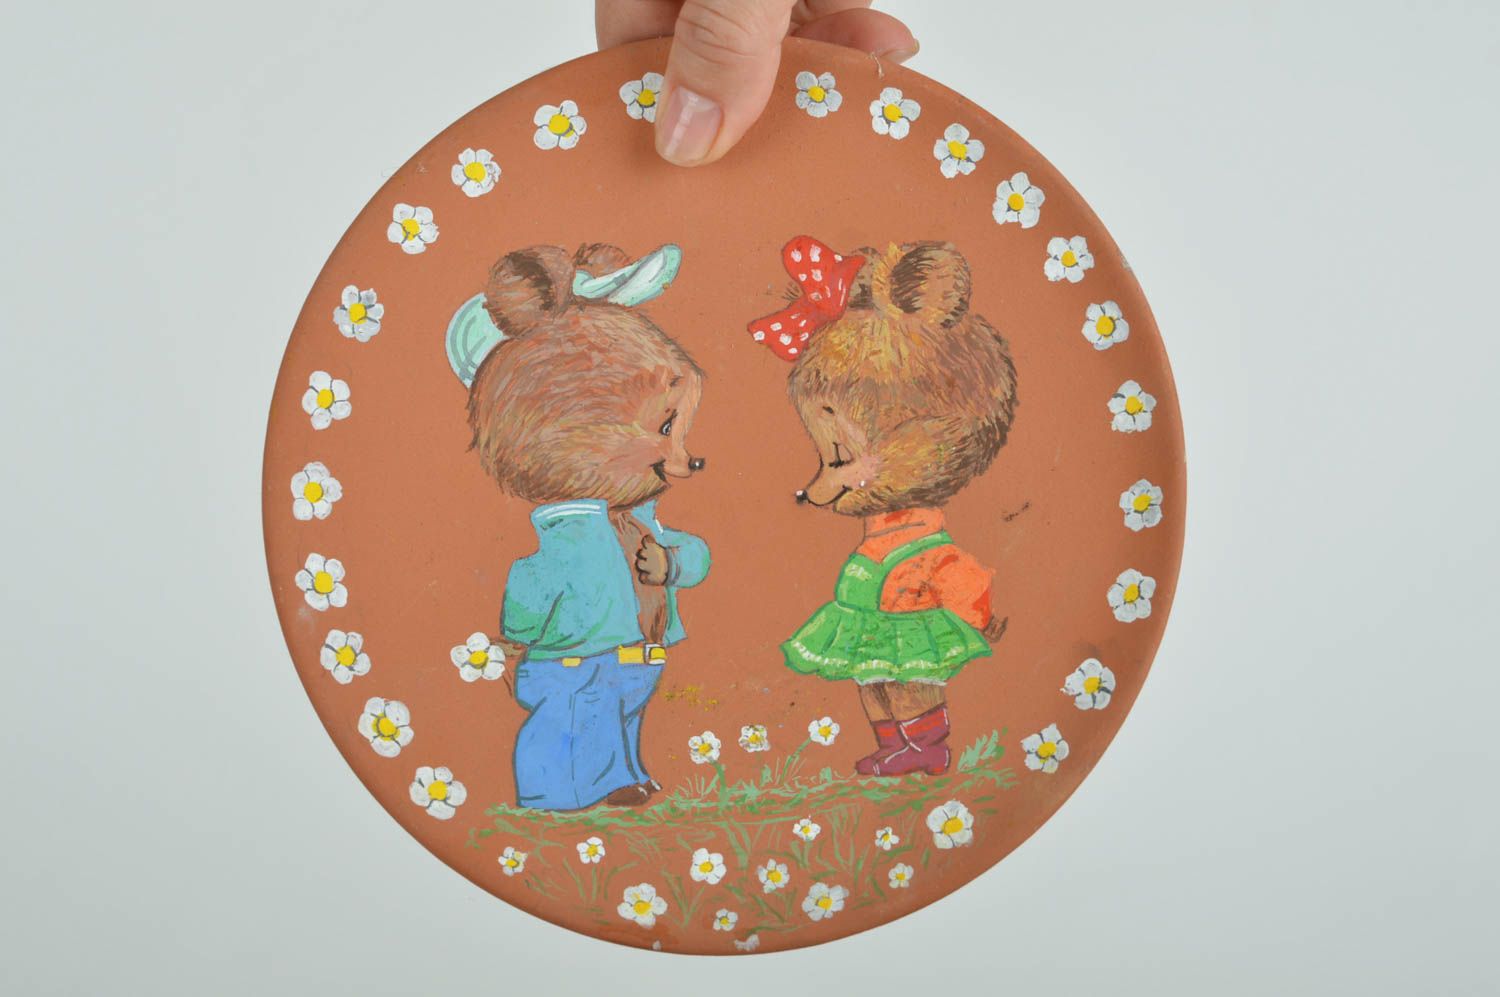 Тарелка из глины расписанная акриловыми красками с рисунком мишек ручной работы фото 3